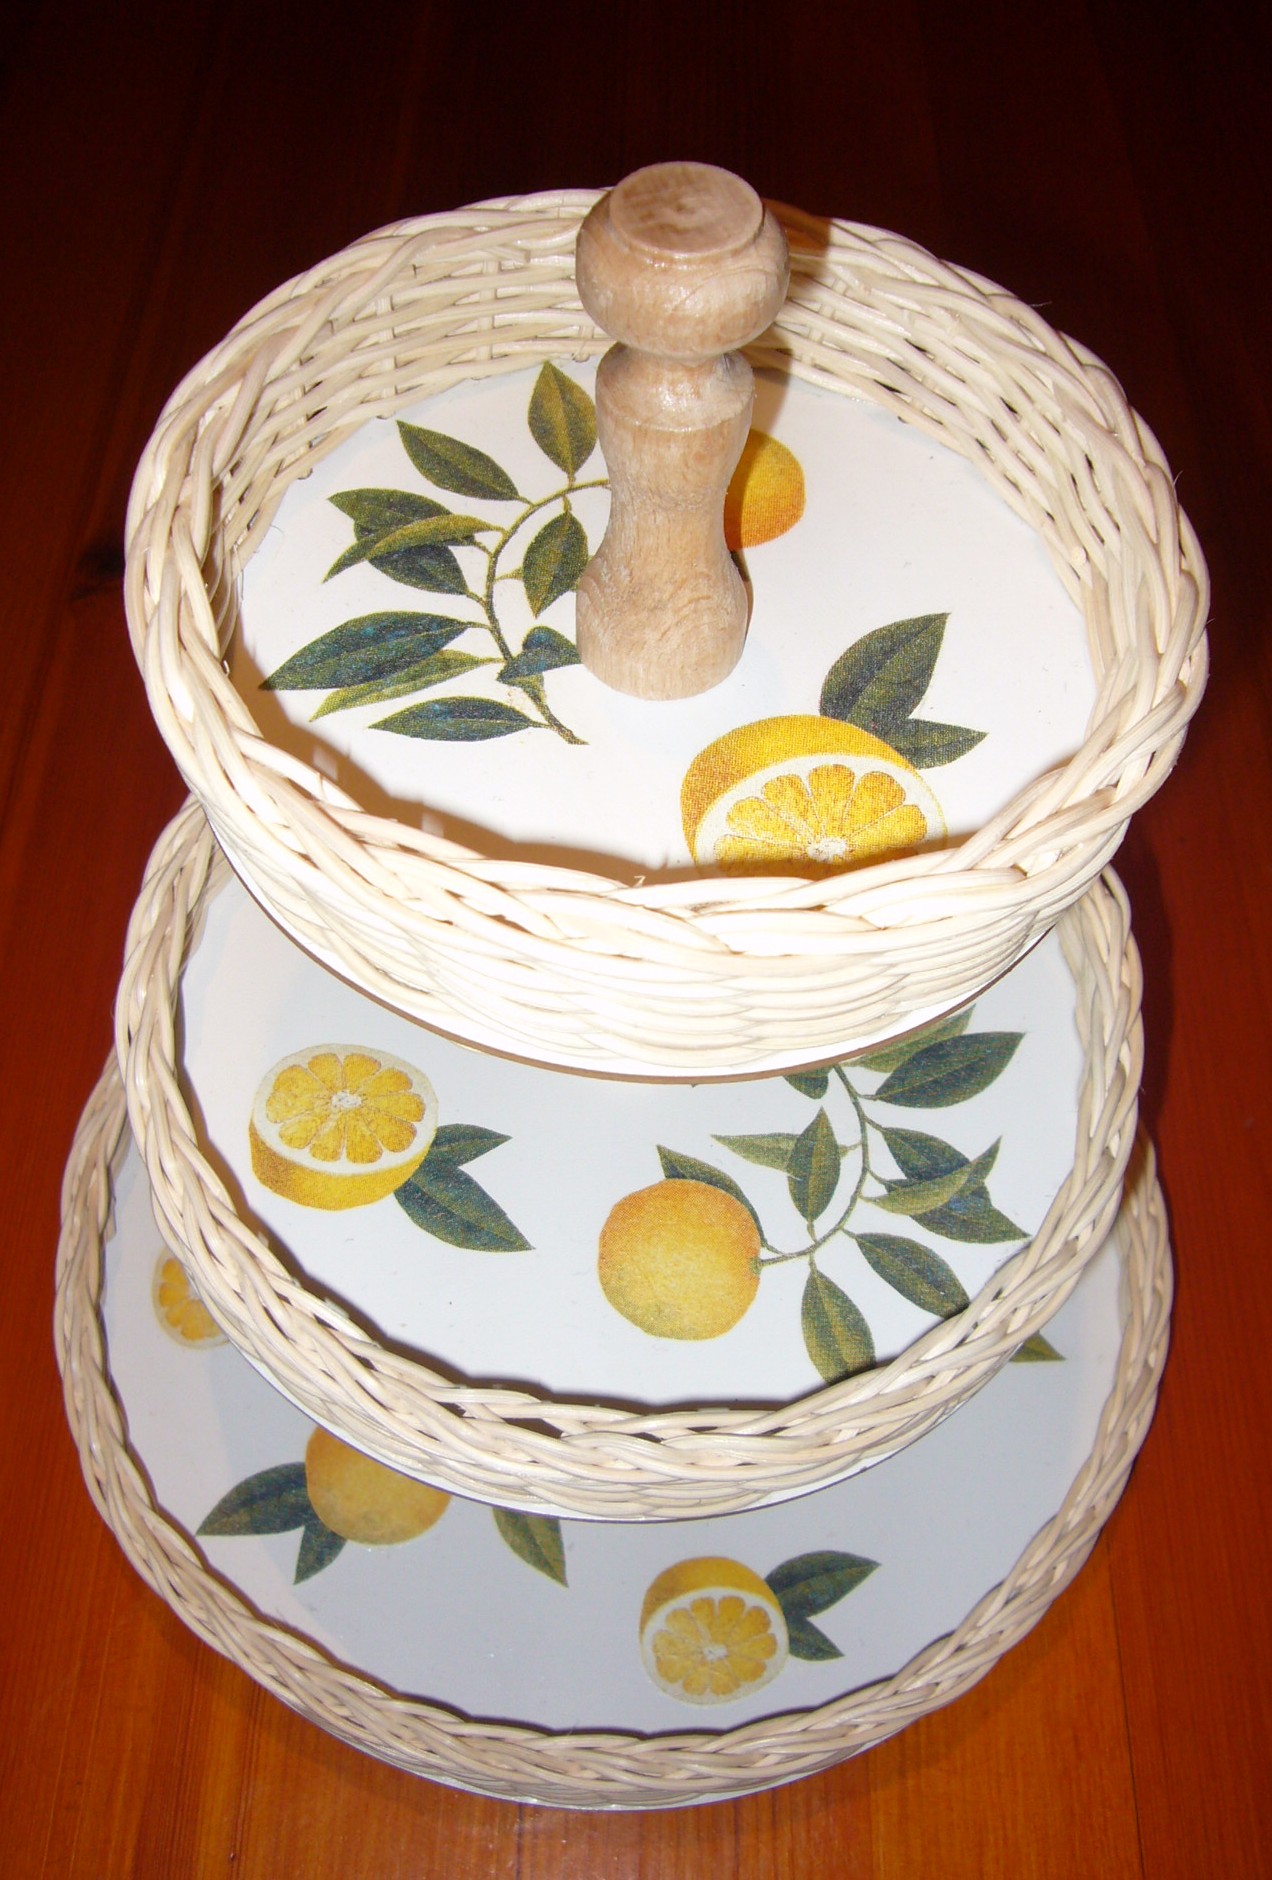 tác třípatrový - citrony